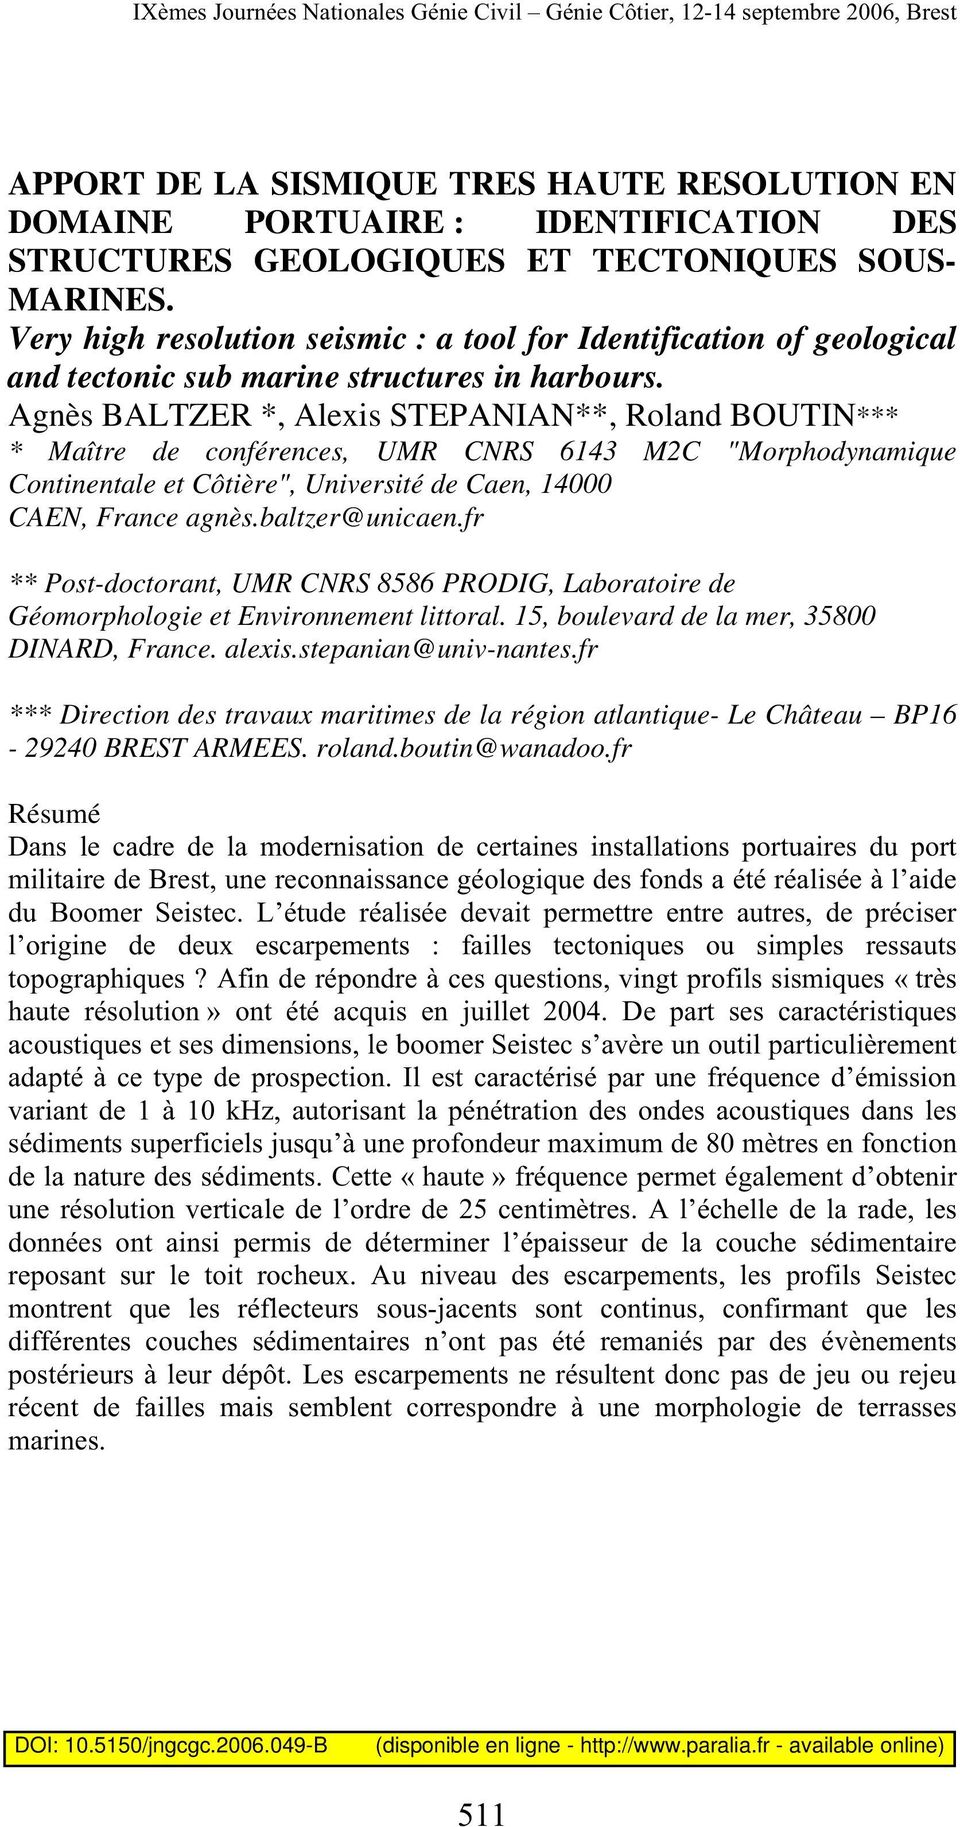 Agnès BALTZER *, Alexis STEPANIAN**, Roland BOUTIN*** * Maître de conférences, UMR CNRS 6143 M2C "Morphodynamique Continentale et Côtière", Université de Caen, 14000 CAEN, France agnès.